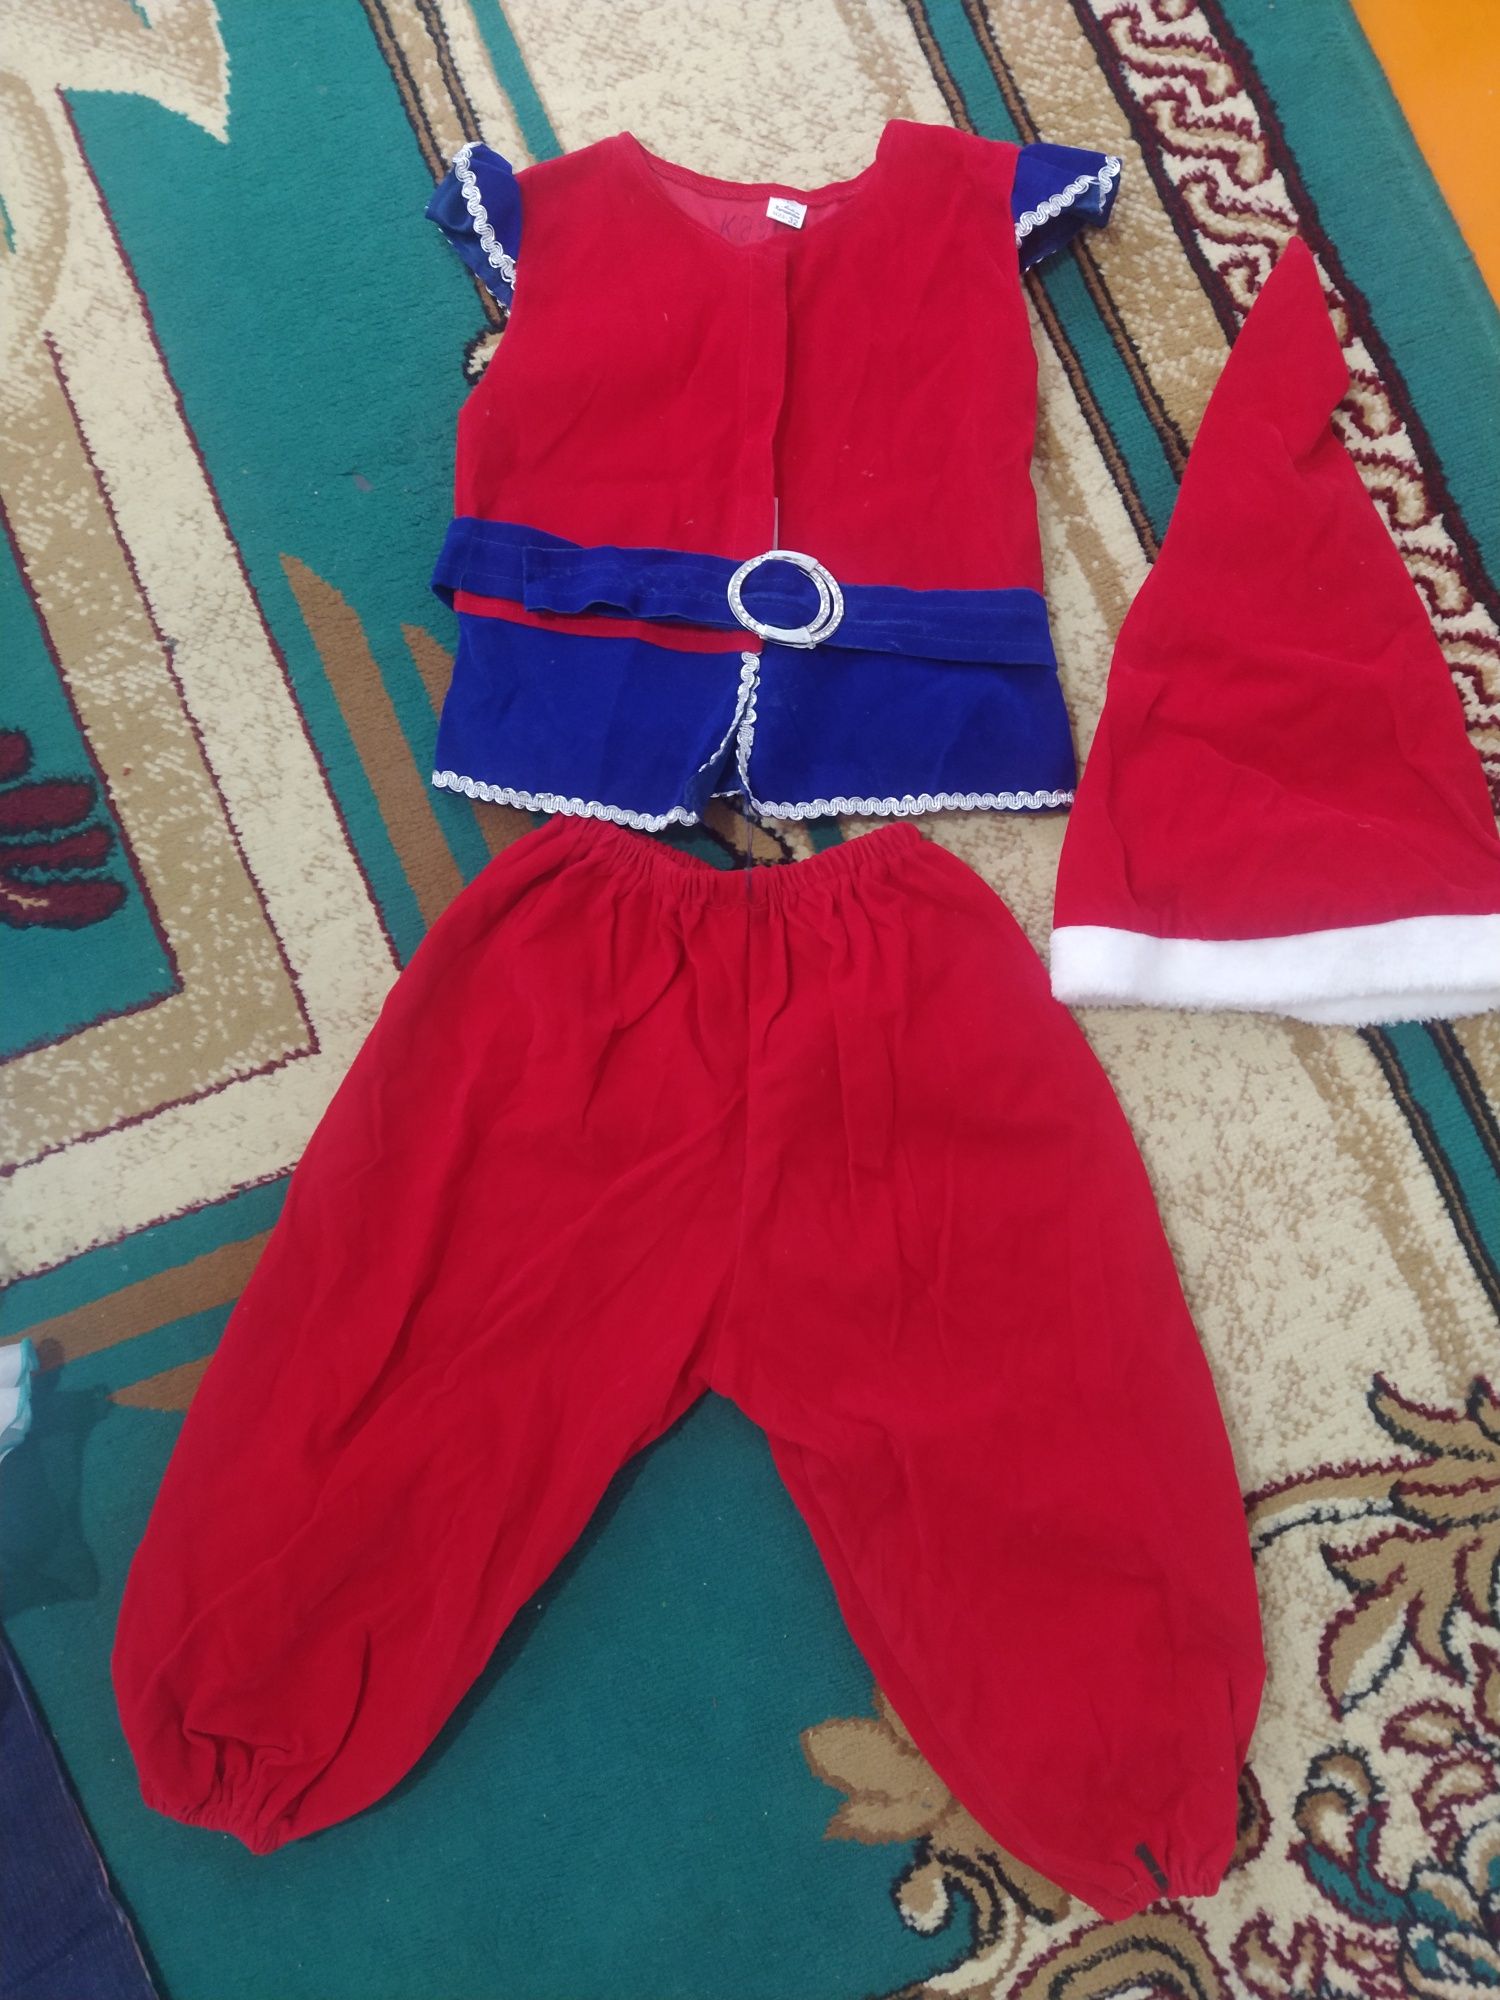 Жаңа жылдық көйлек, гномик костюмы 3-4 жас